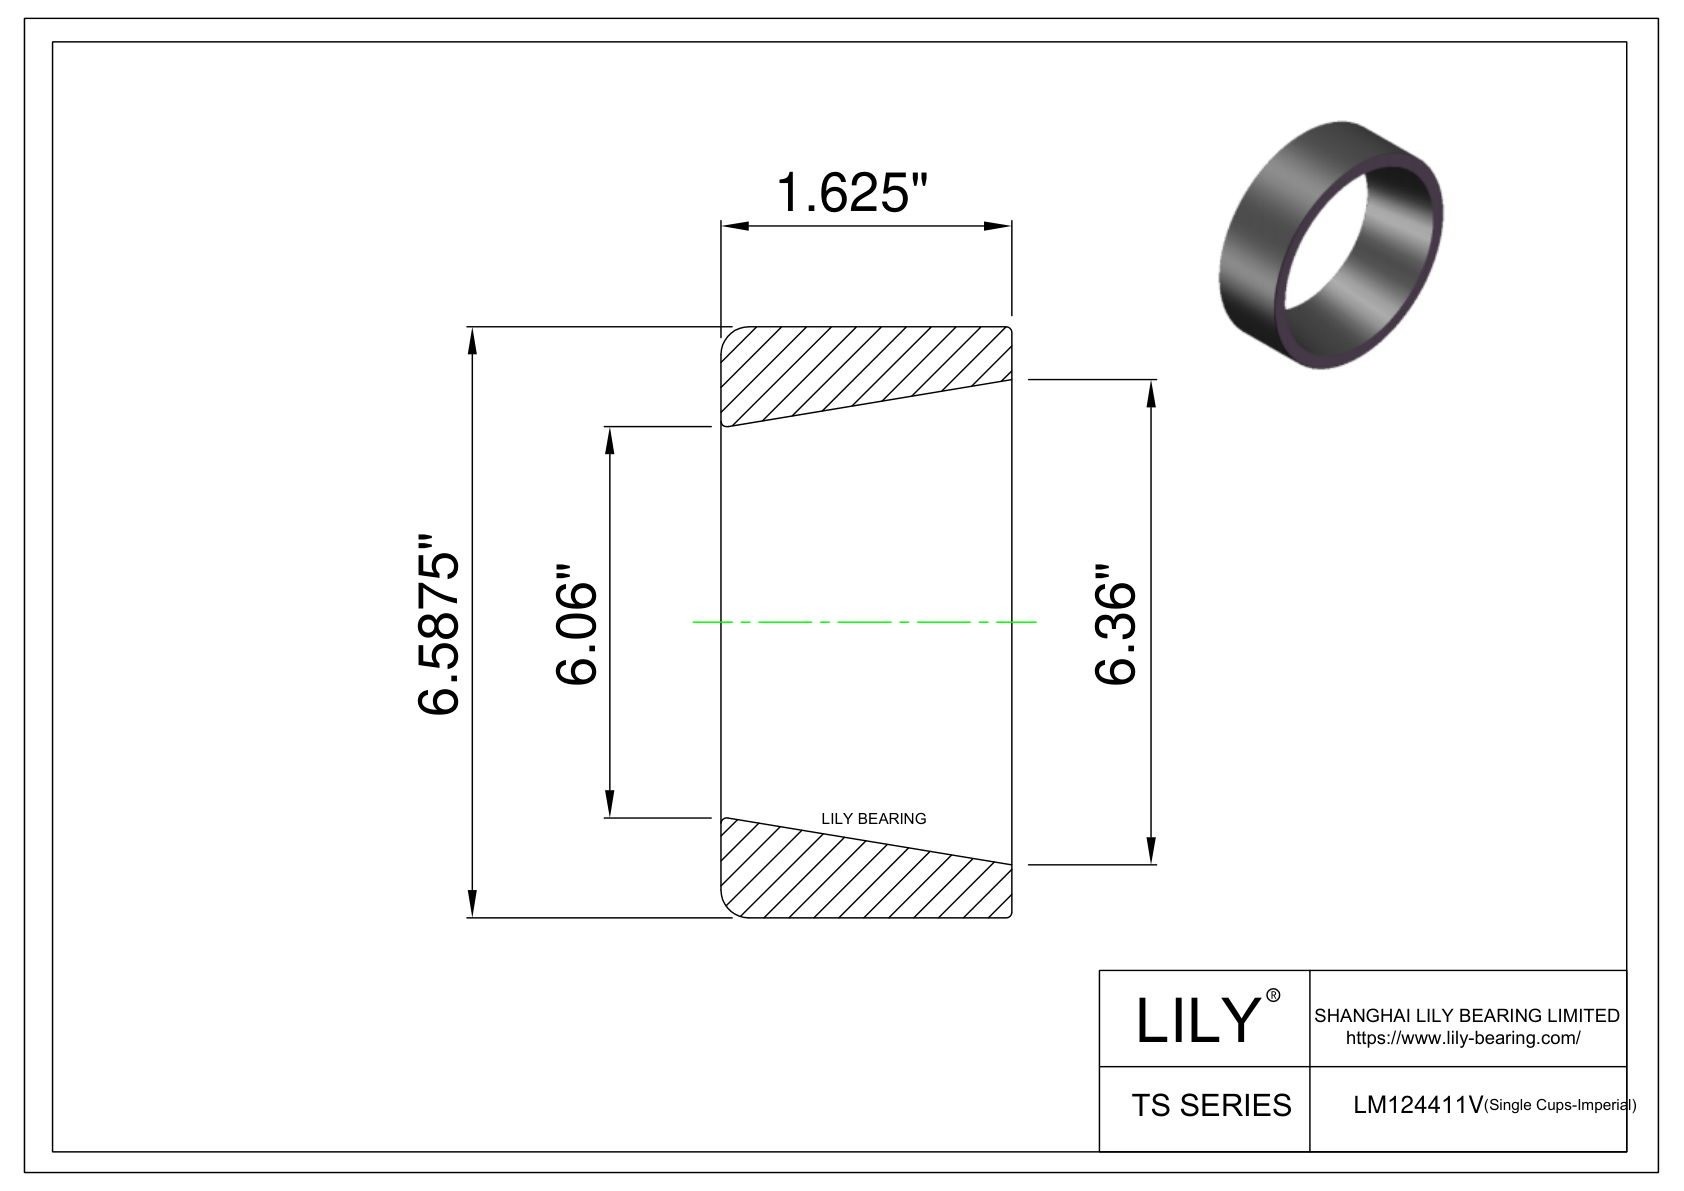 LM124411V 单杯体(英制) CAD图形